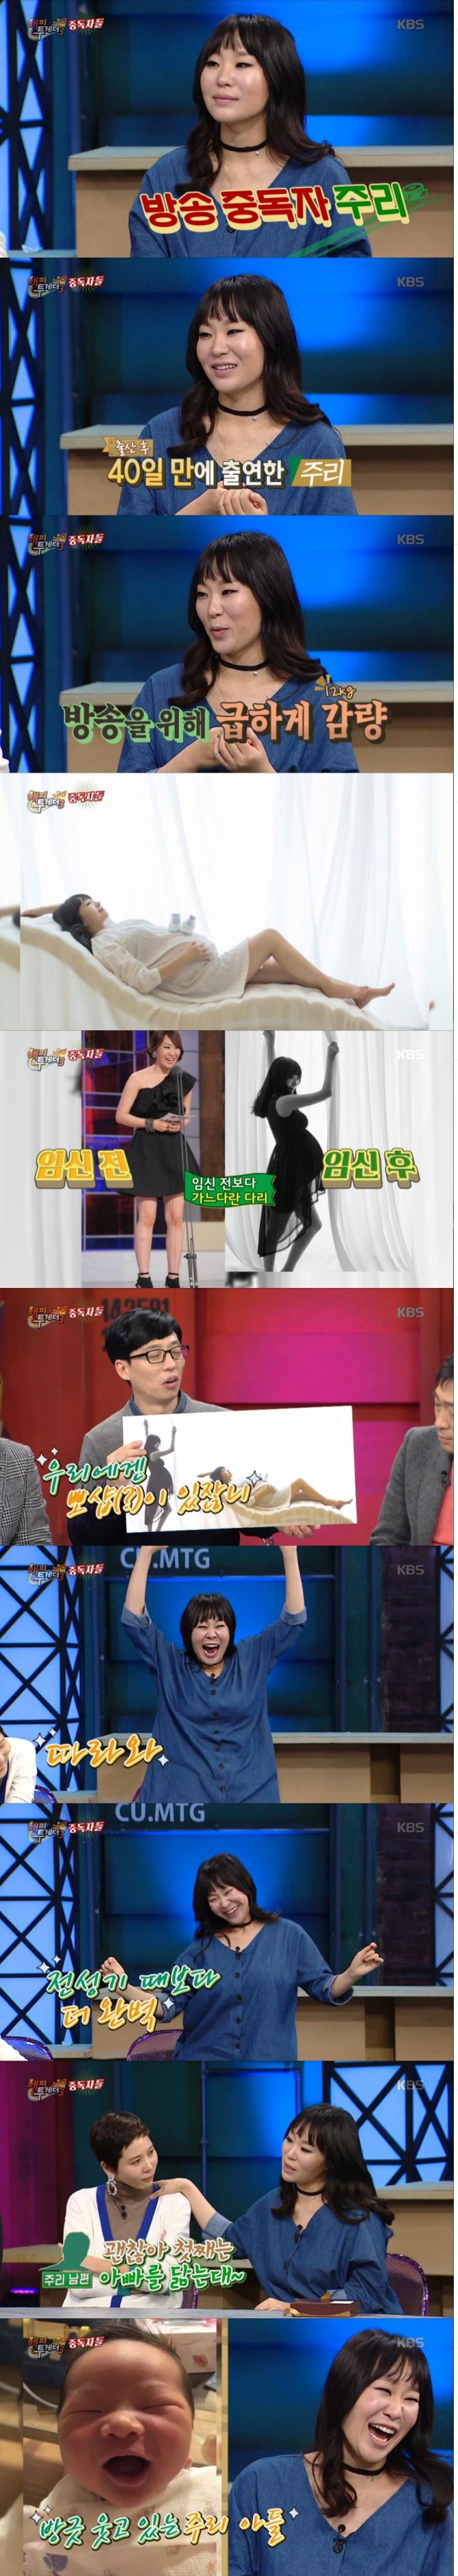 21일 방송된 KBS '해피투게더'에 개그우먼 정주리가 방송중독자로 출연해 큰 웃음을 안겨주었다./사진=KBS방송 캡처